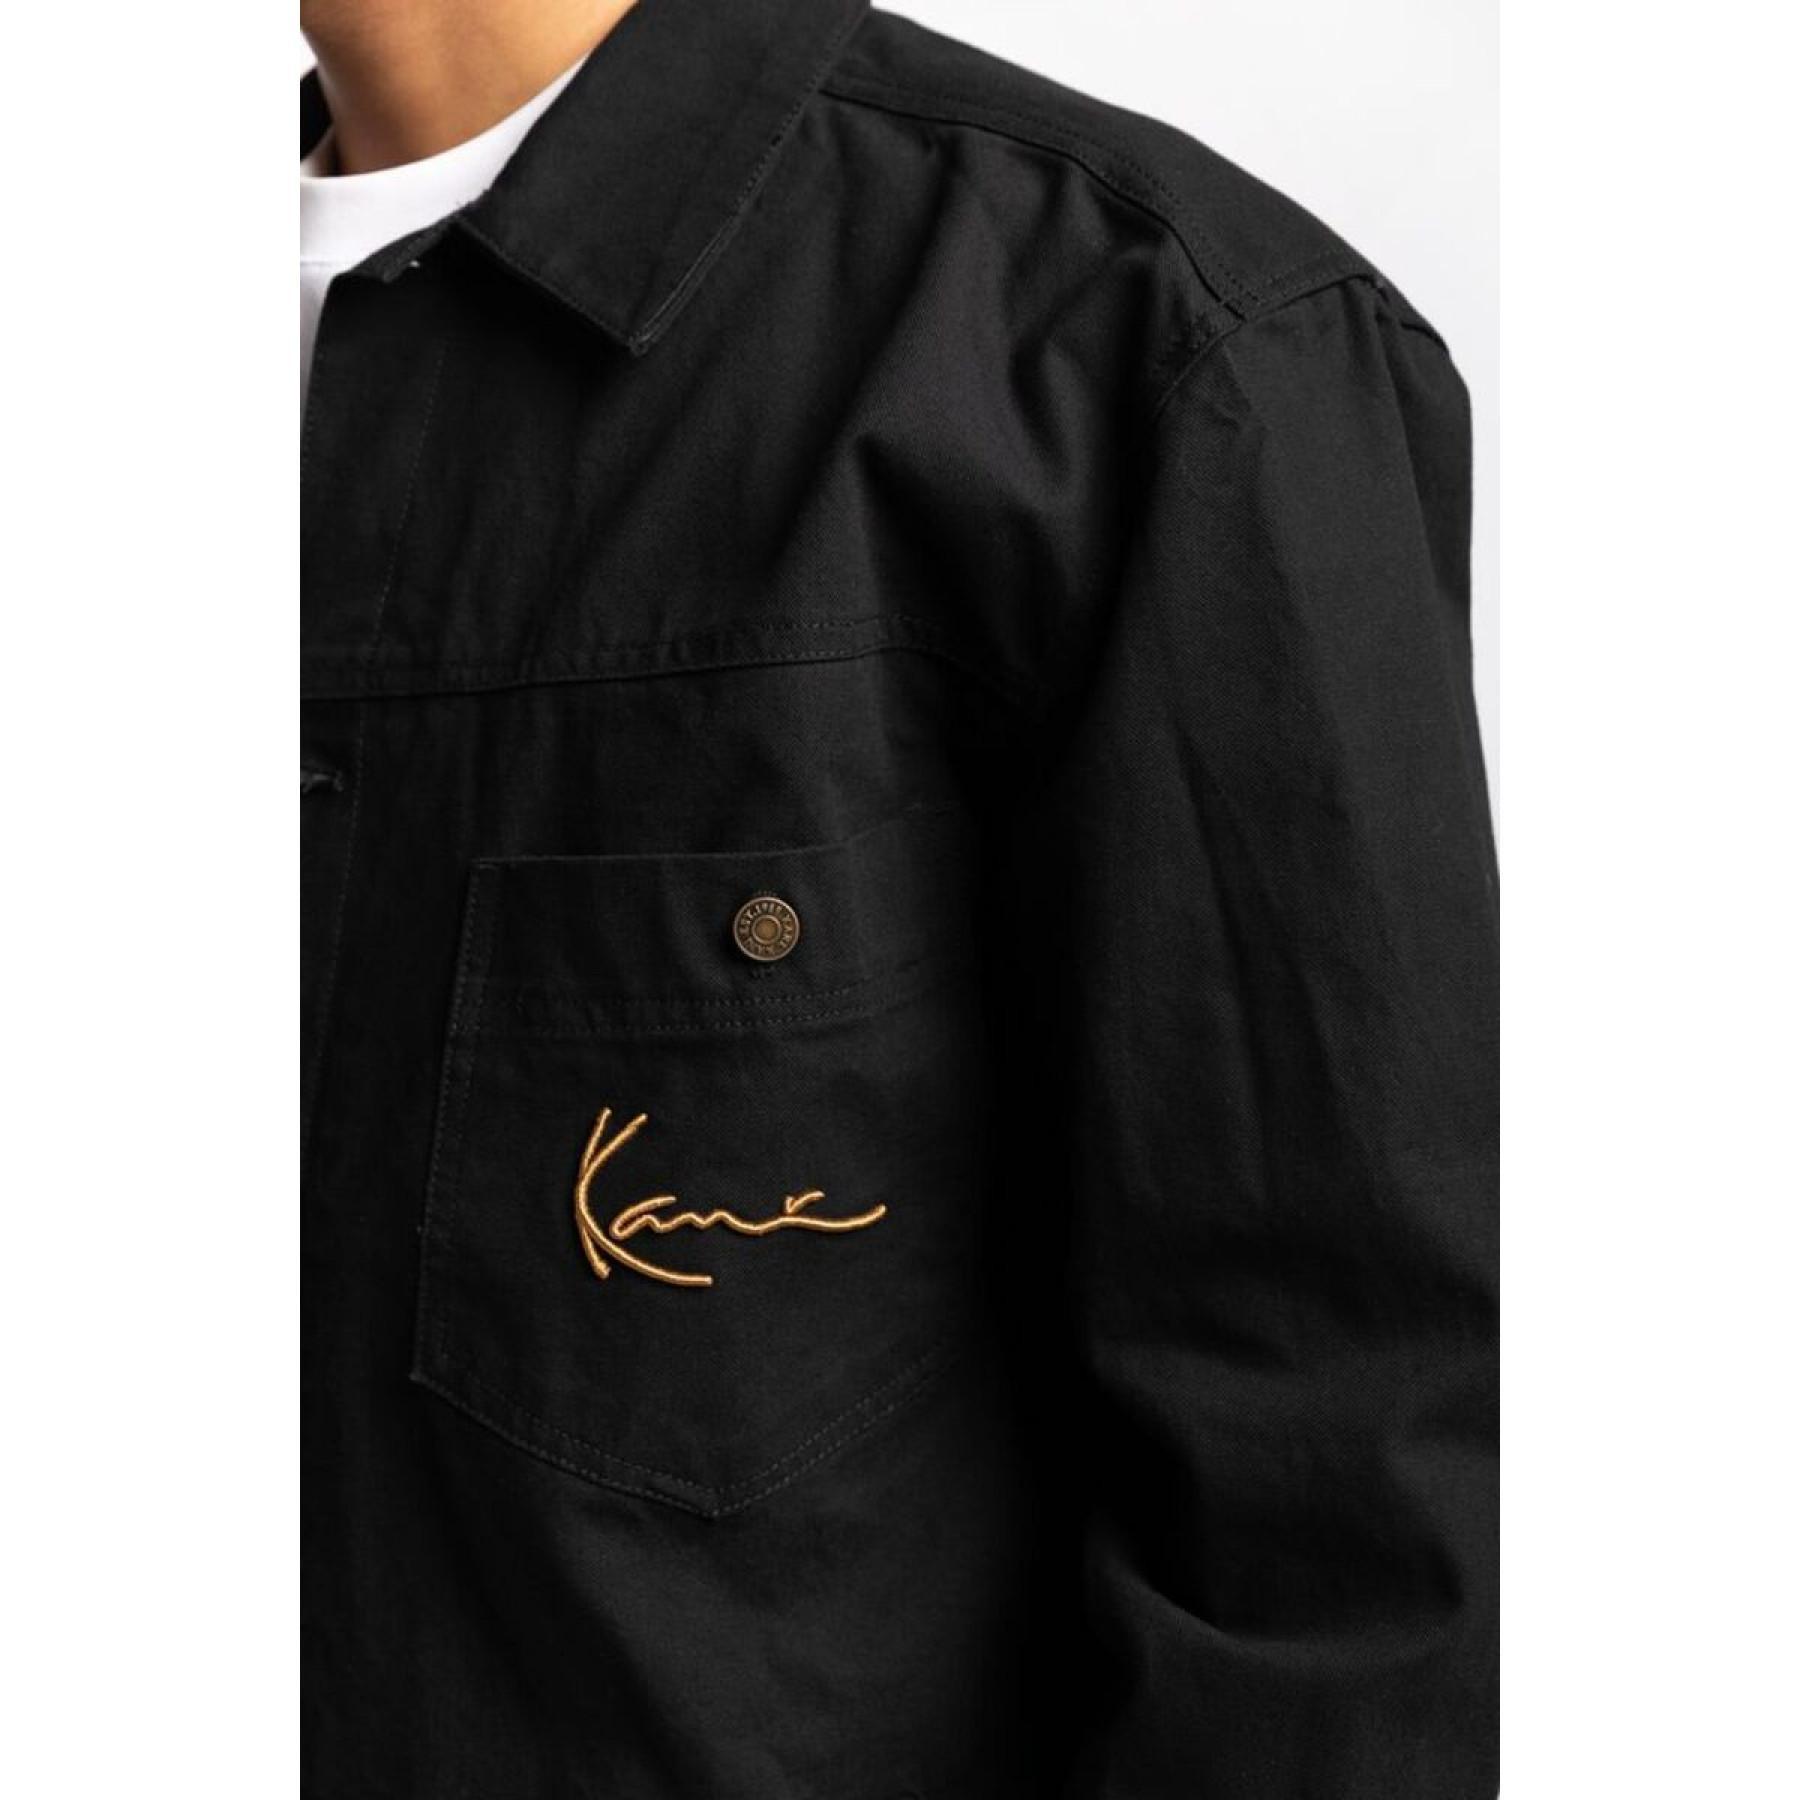 Camisa Karl Kani Small Signature